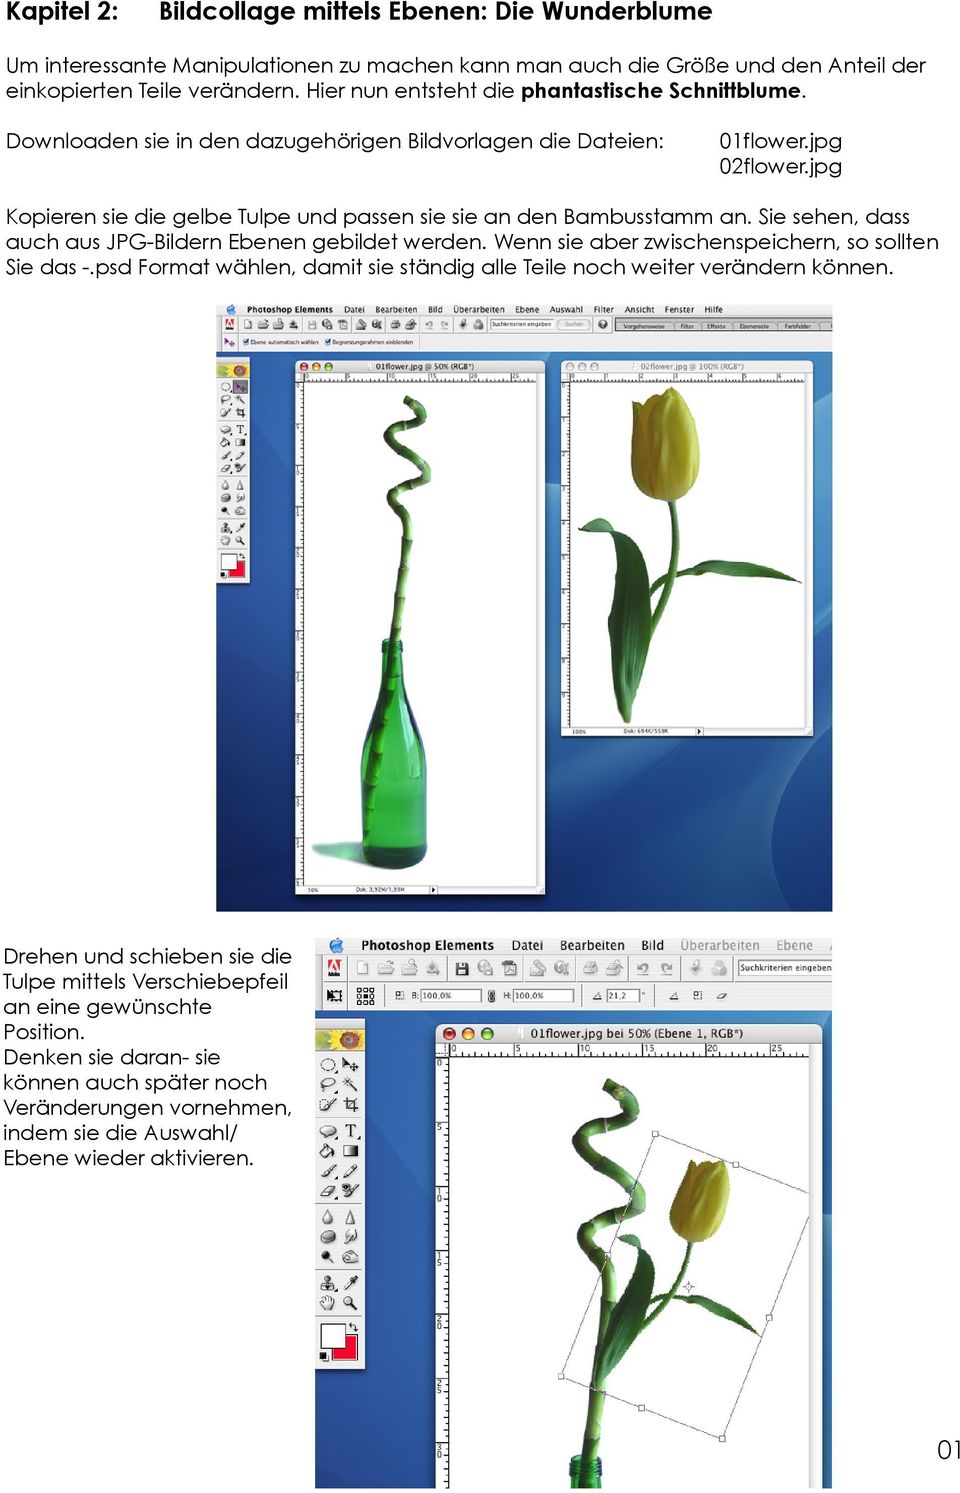 jpg Kopieren sie die gelbe Tulpe und passen sie sie an den Bambusstamm an. Sie sehen, dass auch aus JPG-Bildern Ebenen gebildet werden. Wenn sie aber zwischenspeichern, so sollten Sie das -.